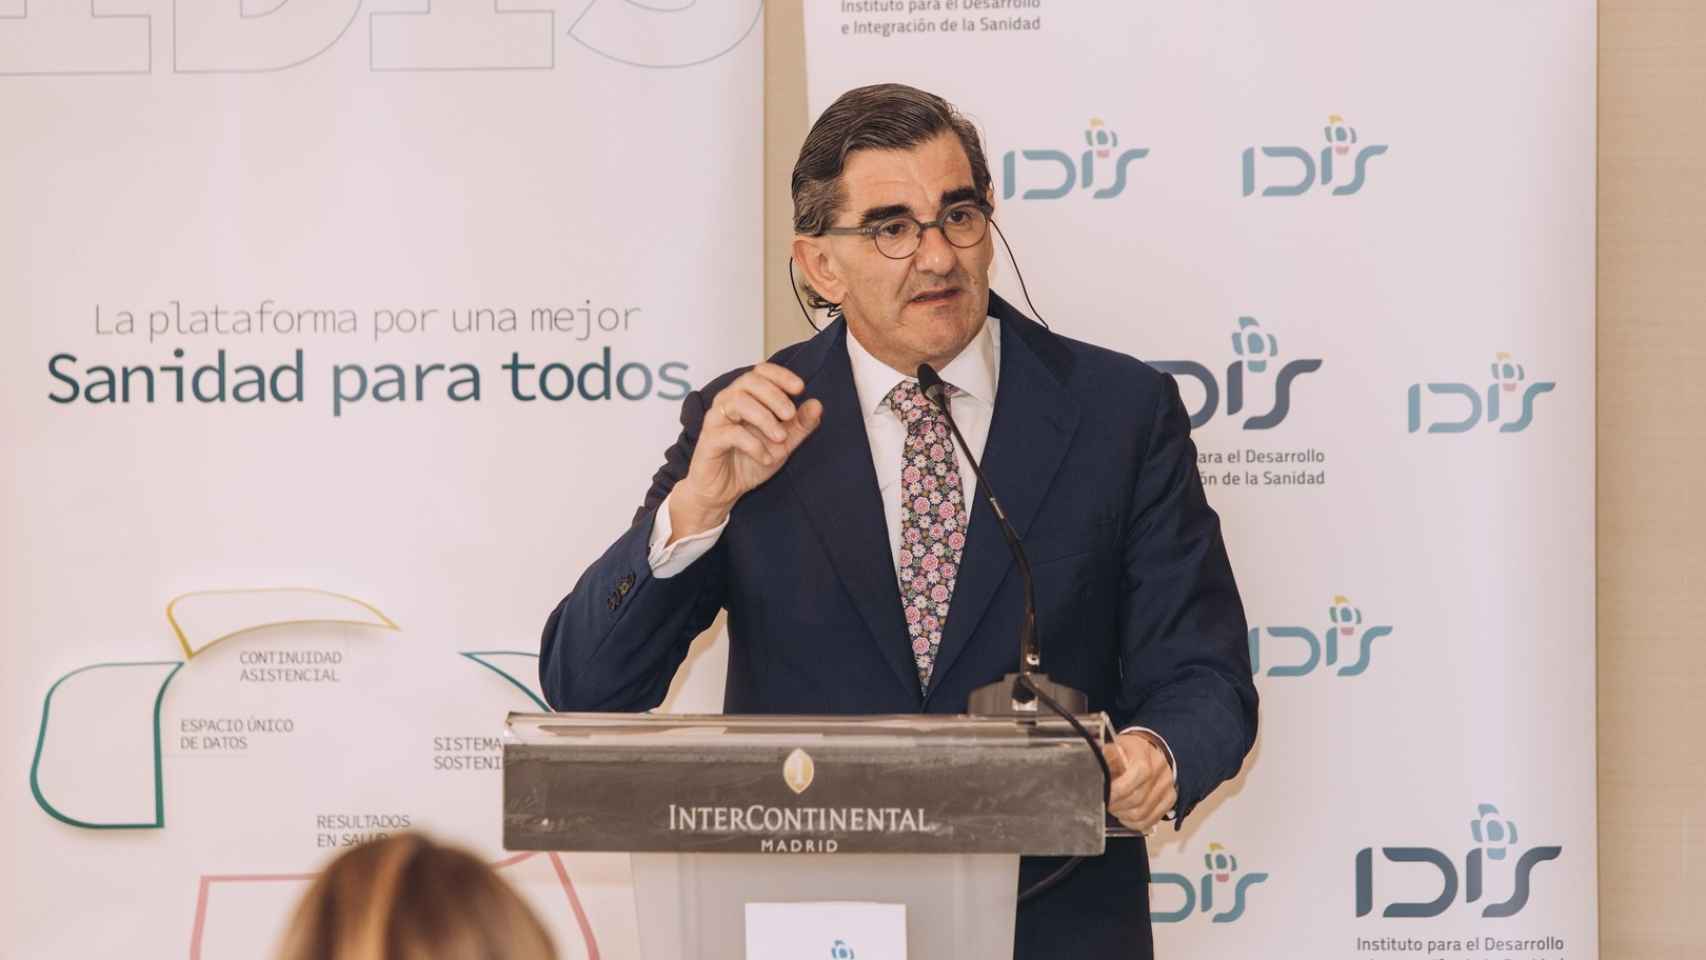 El presidente del Instituto para el Desarrollo e Integración de la Sanidad (Fundación IDIS), Juan Abarca